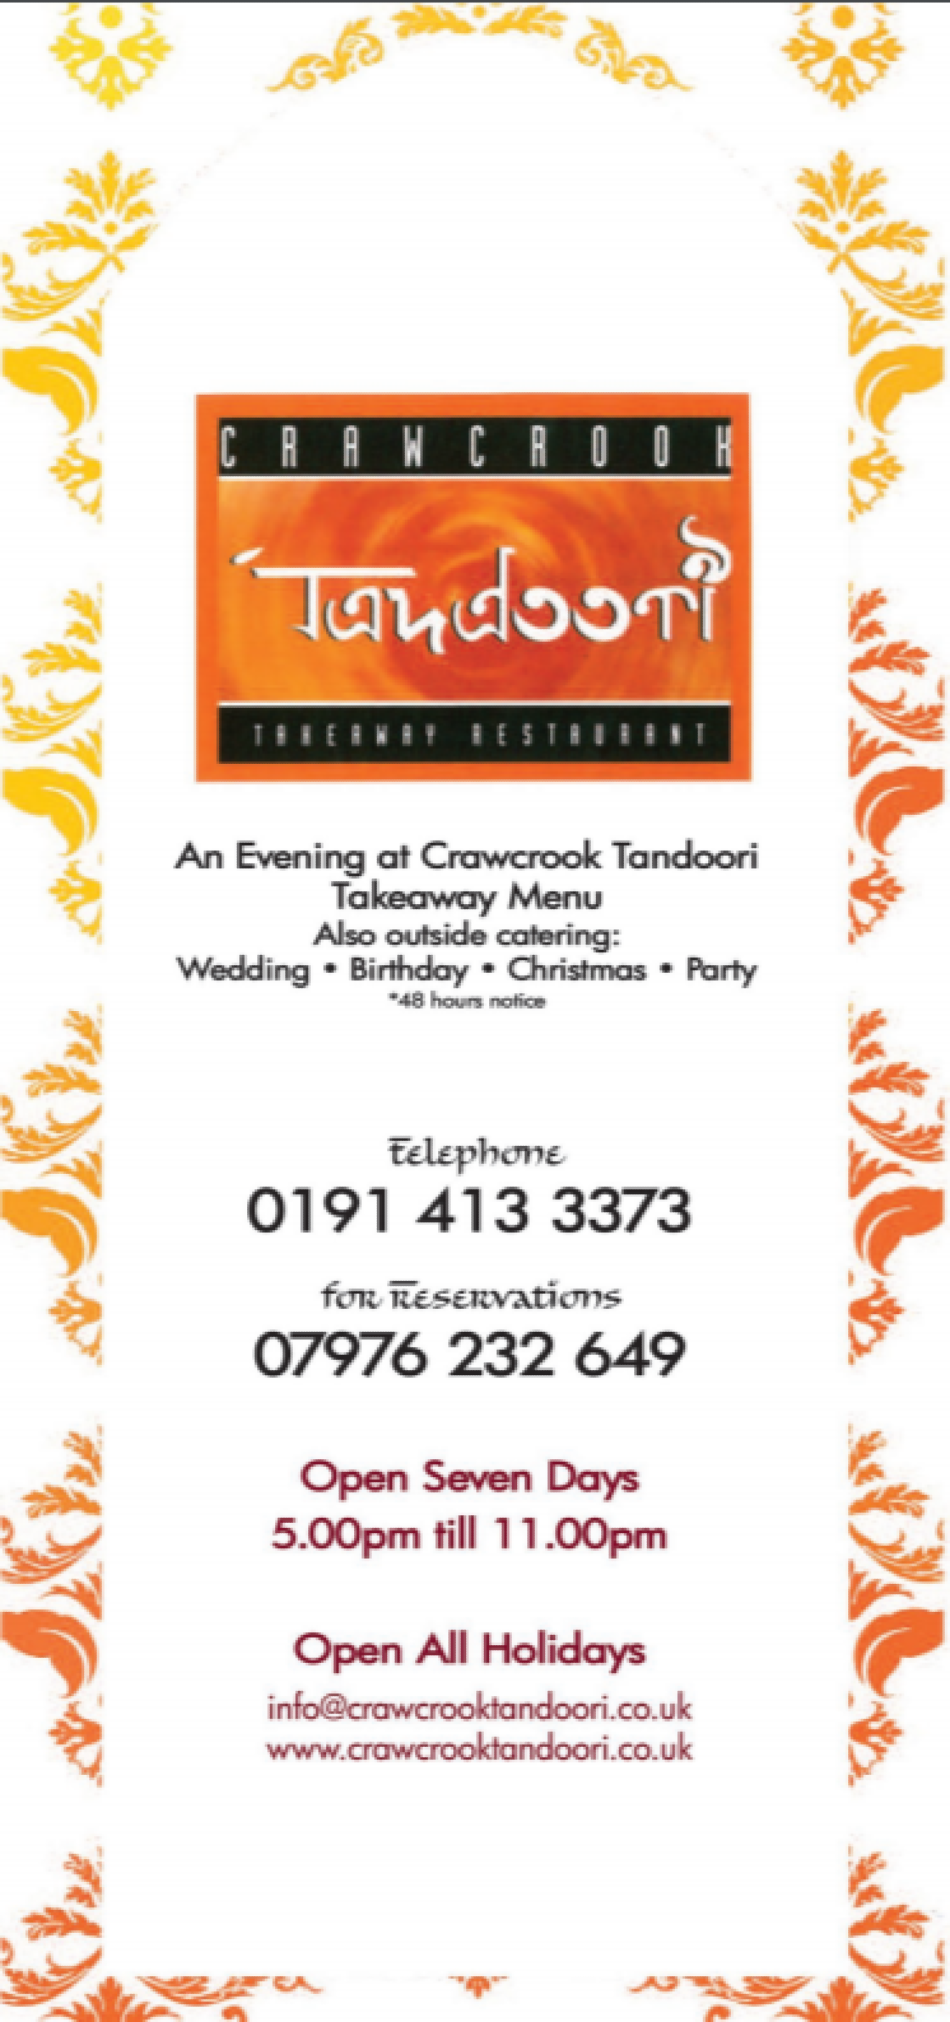 Takeaway Restaurant Menu Page - Crawcrook Tandoori - Ryton